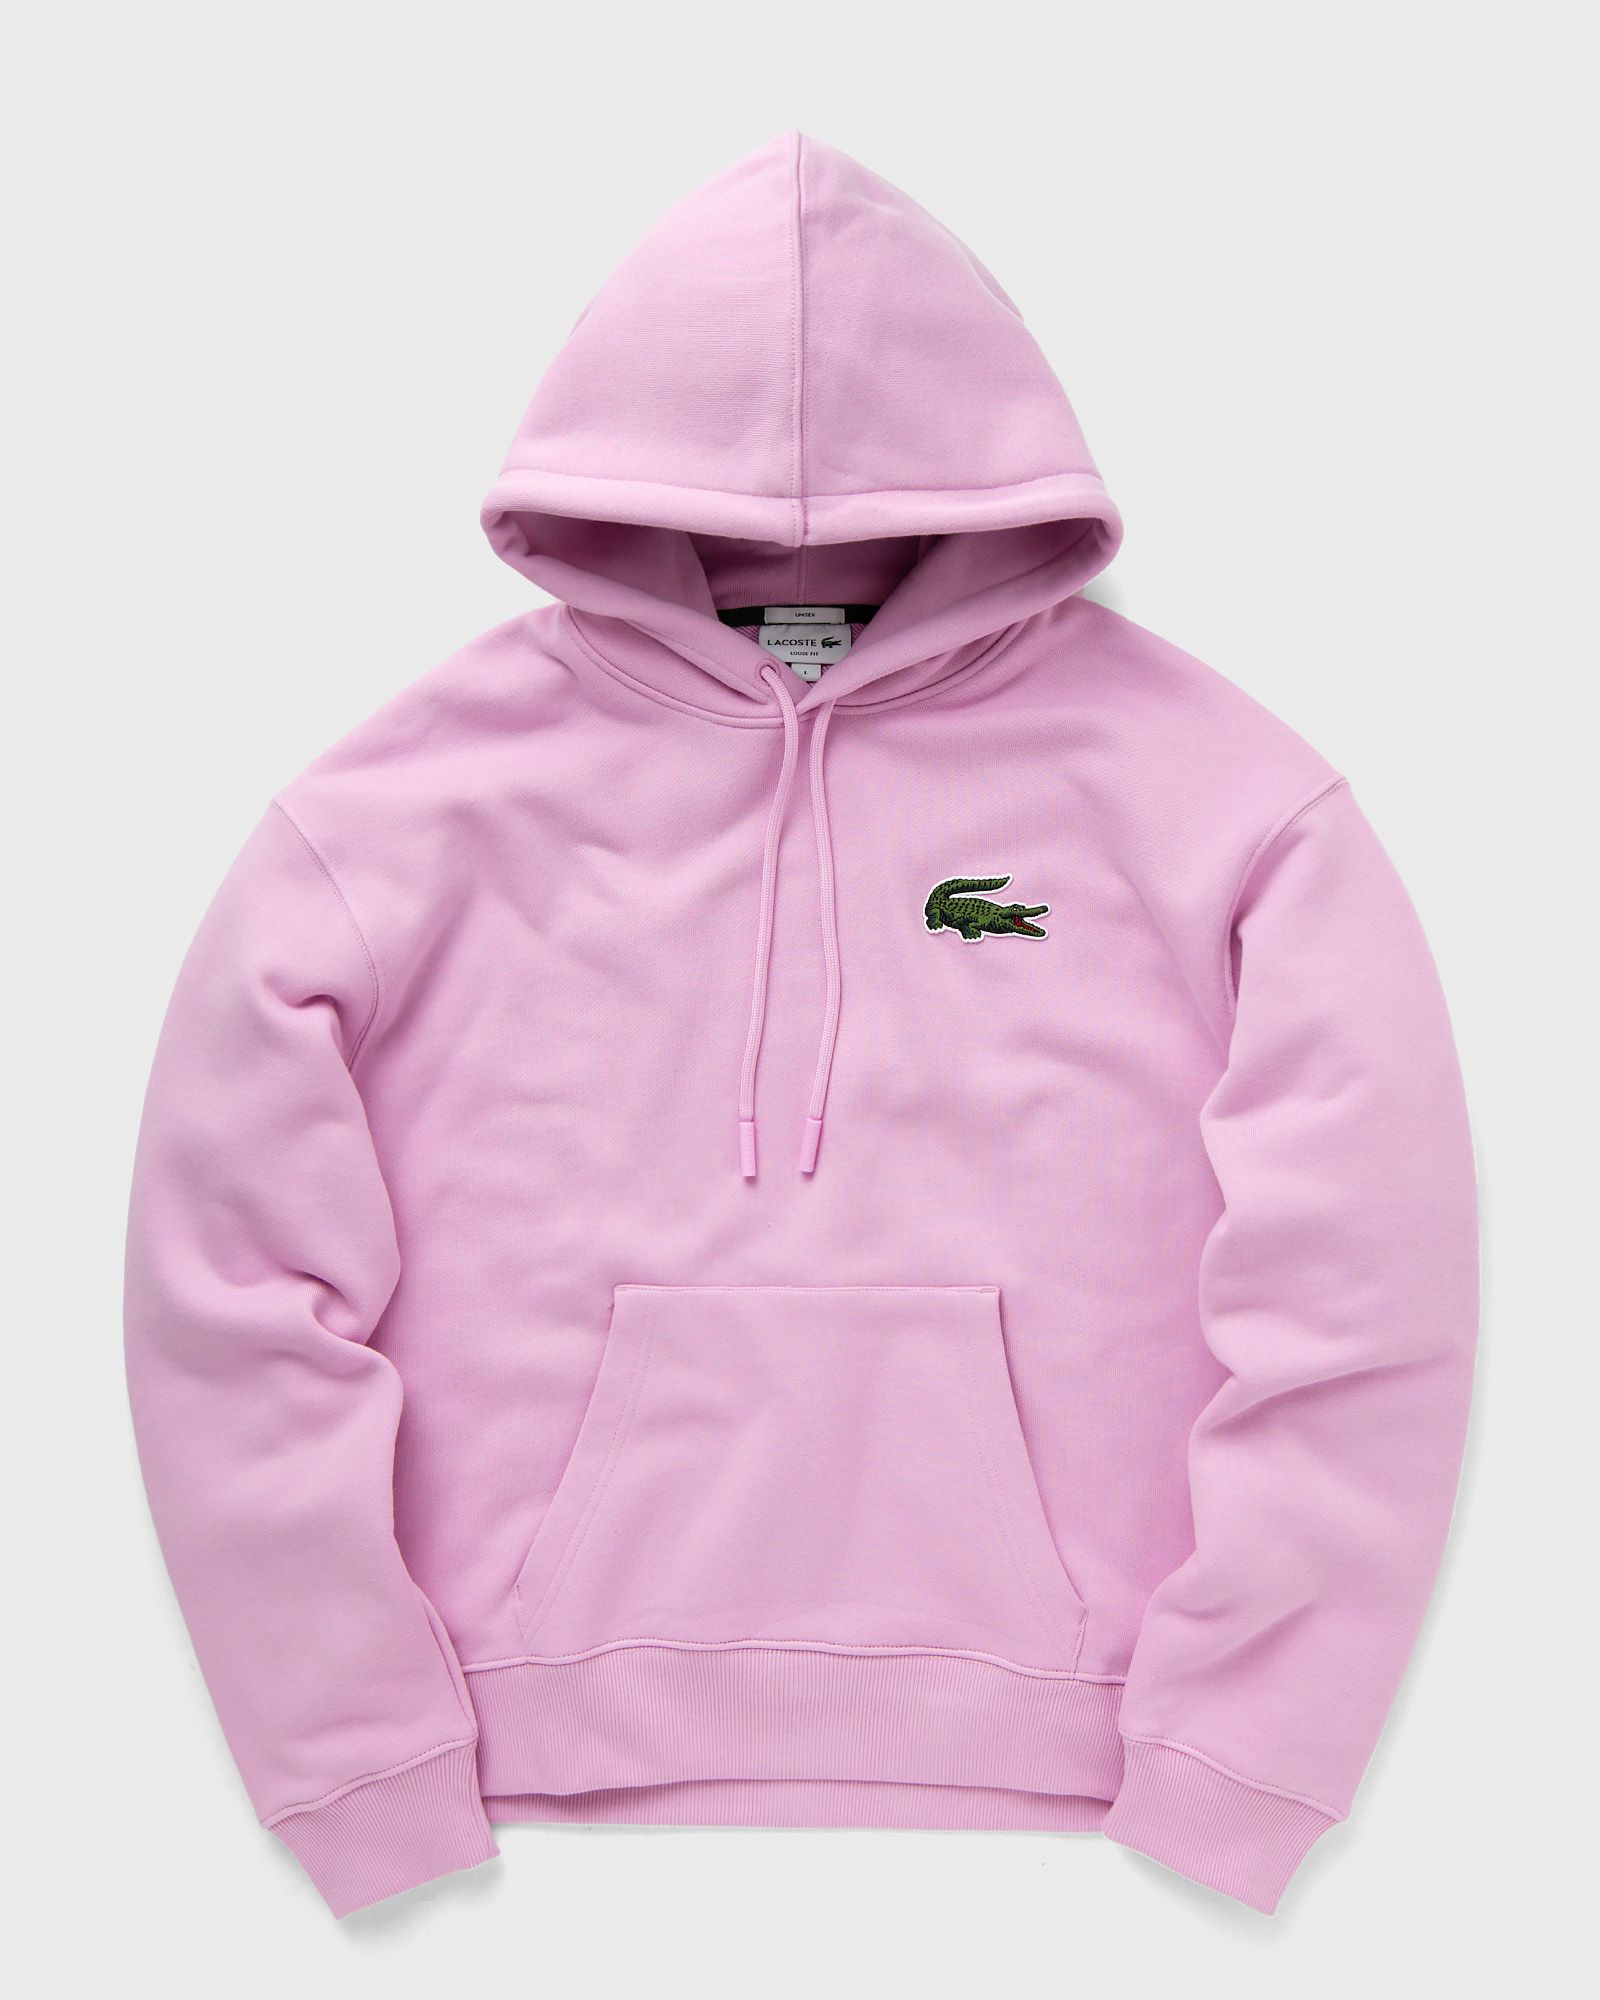 Lacoste - loose fit organic cotton hoodie men hoodies pink in größe:xxl